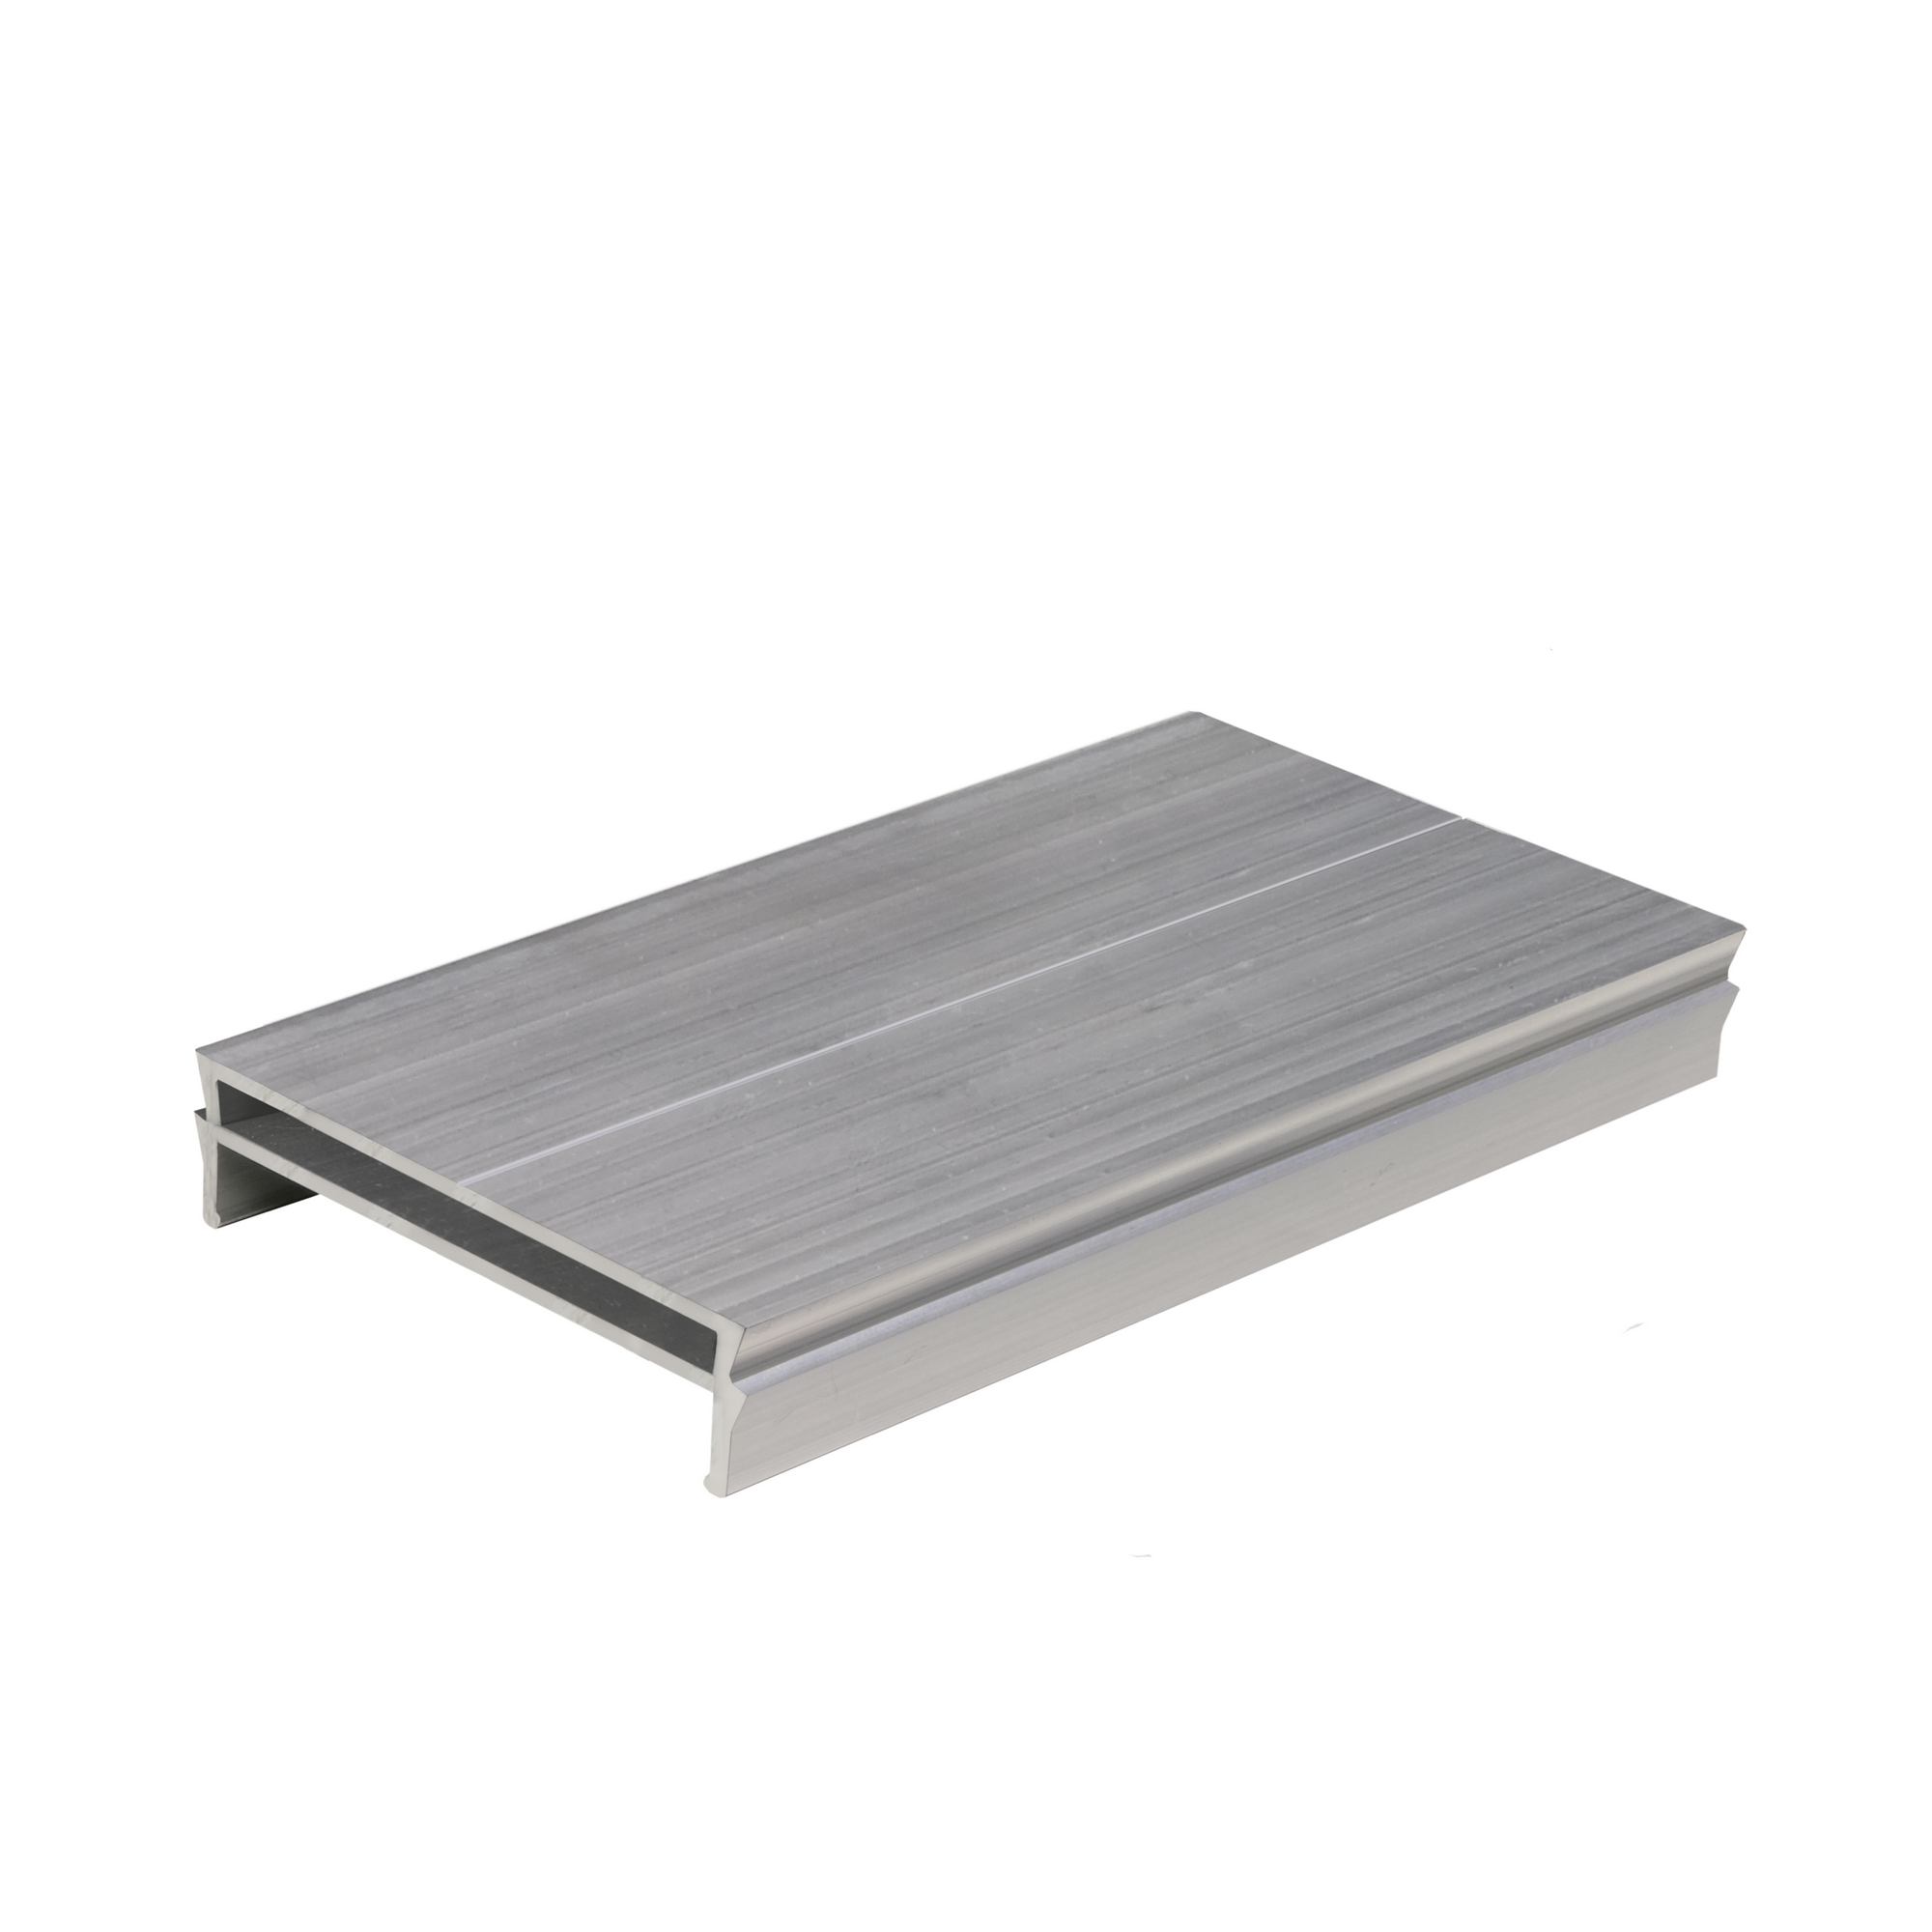 Adapter für Terrassenlager aus Aluminium 10 Stück + product picture